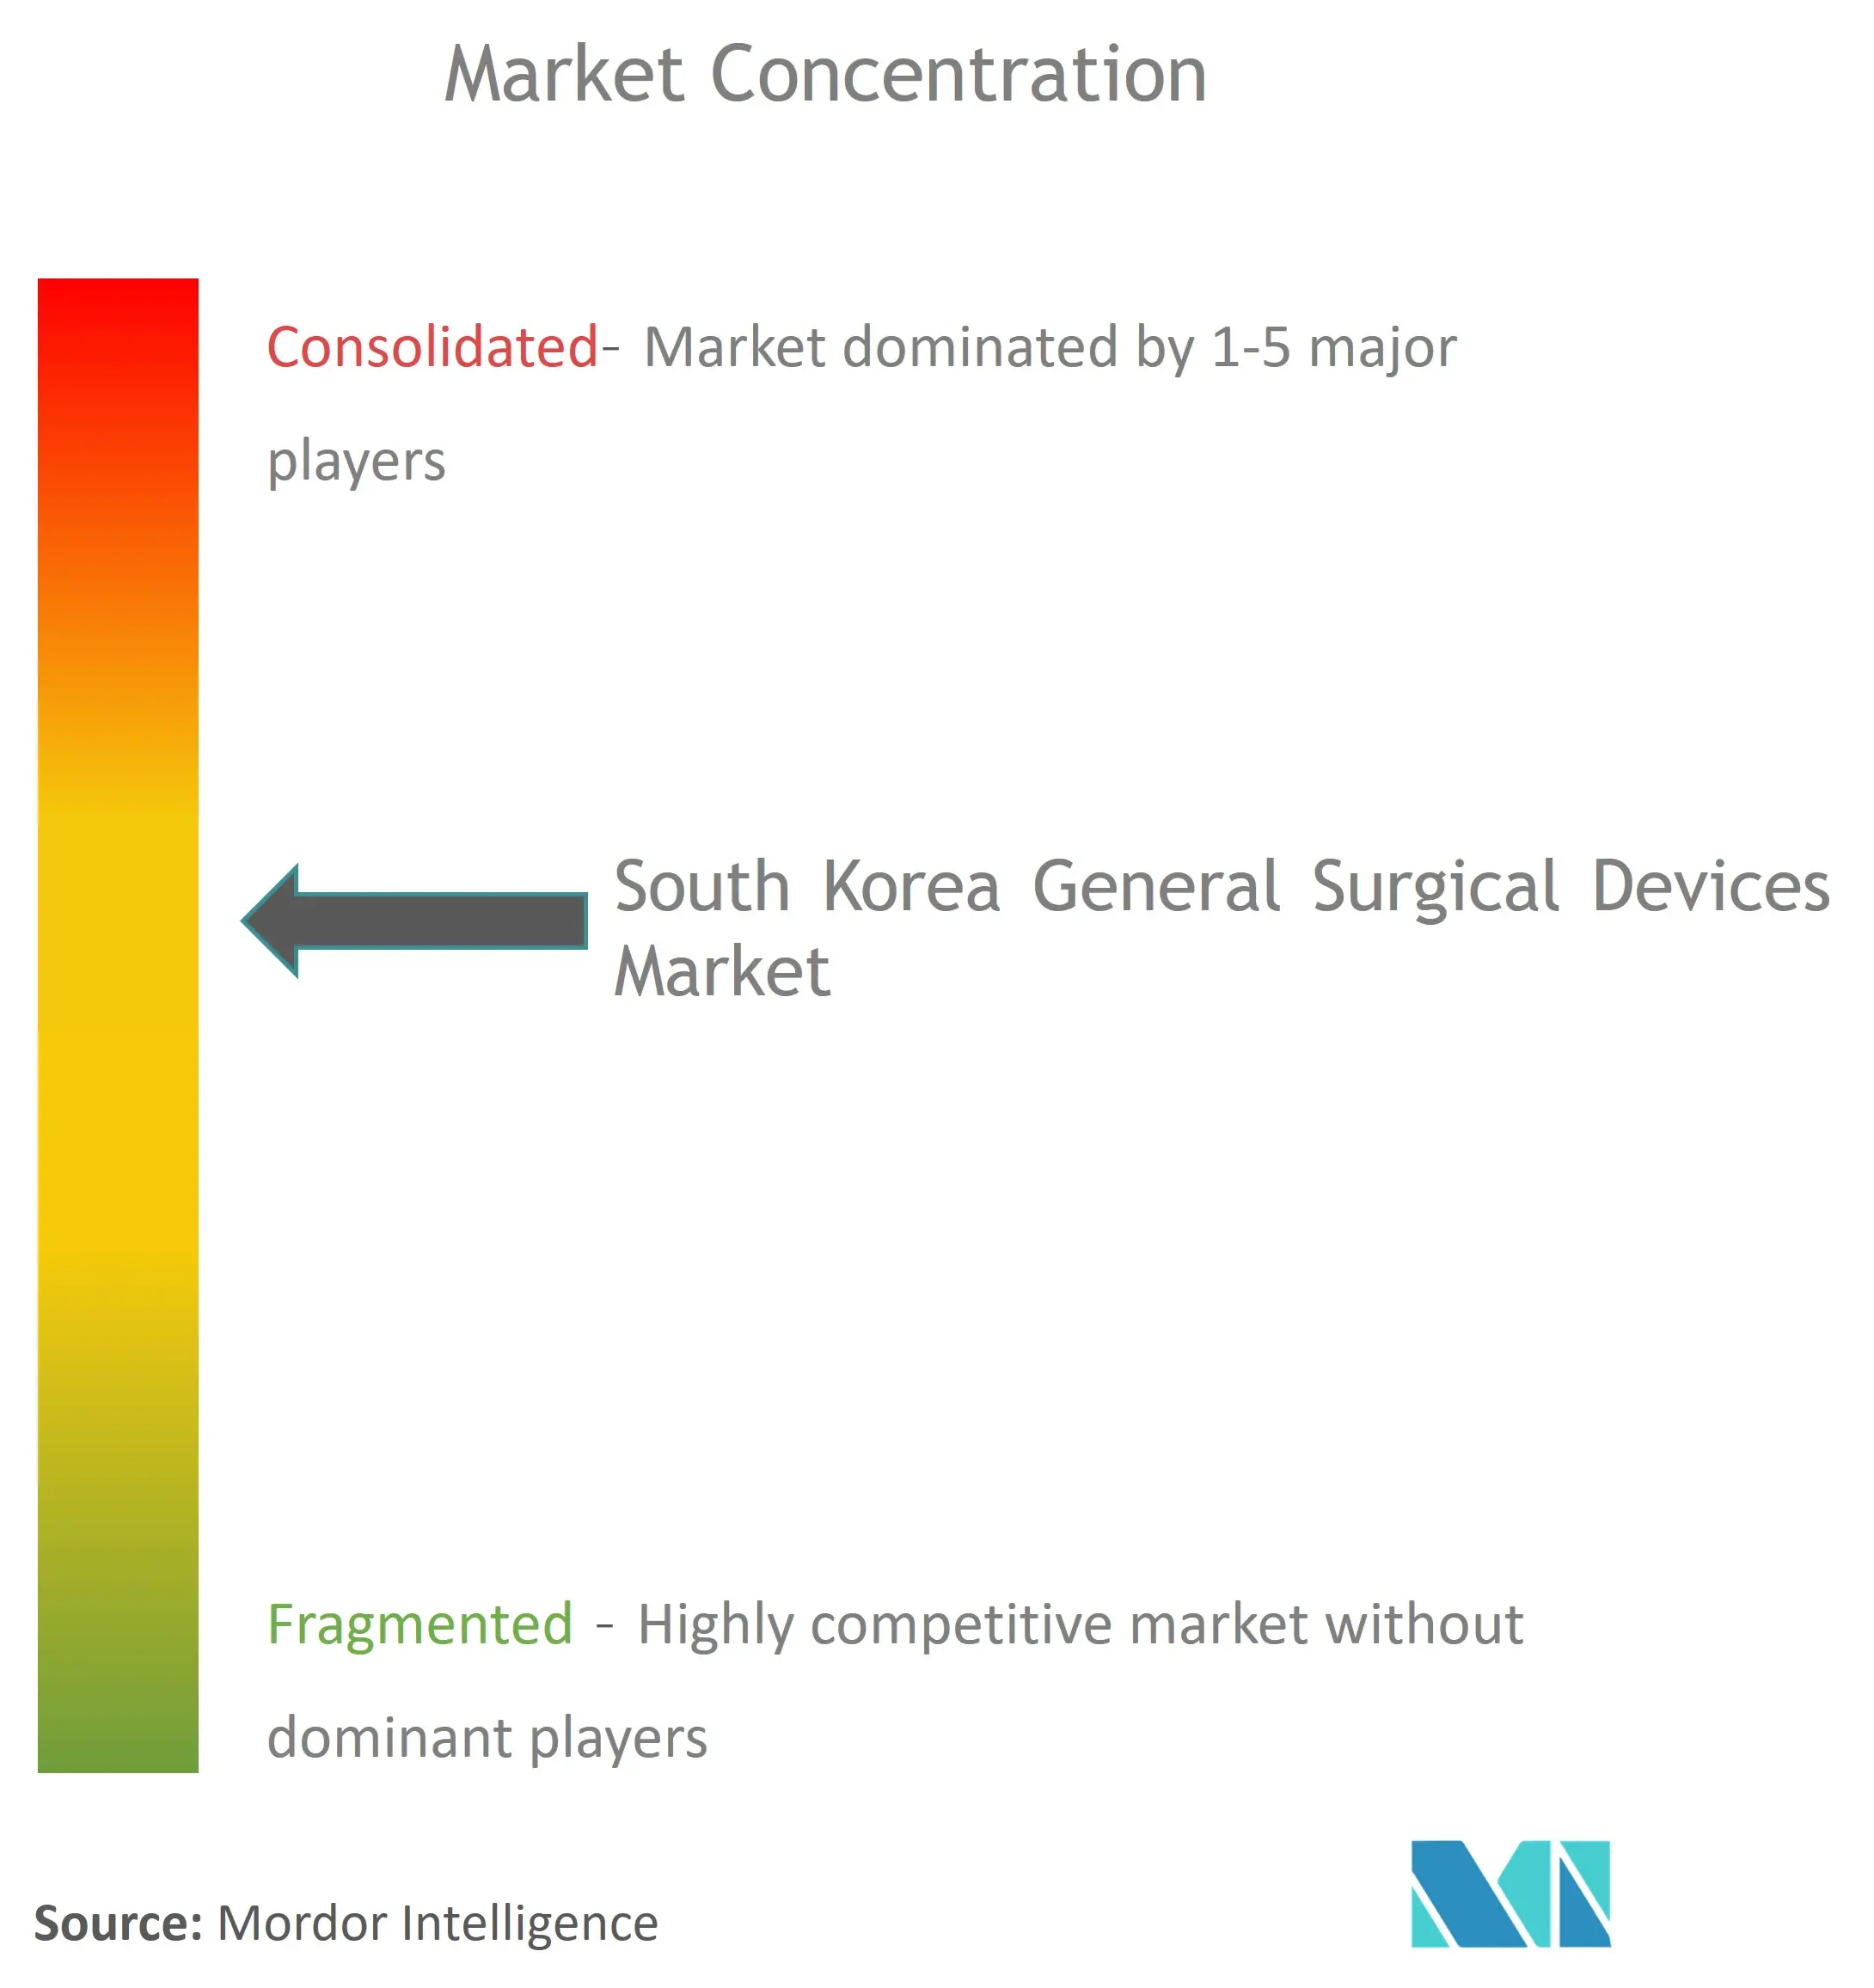 韩国普通手术器械市场集中度.png